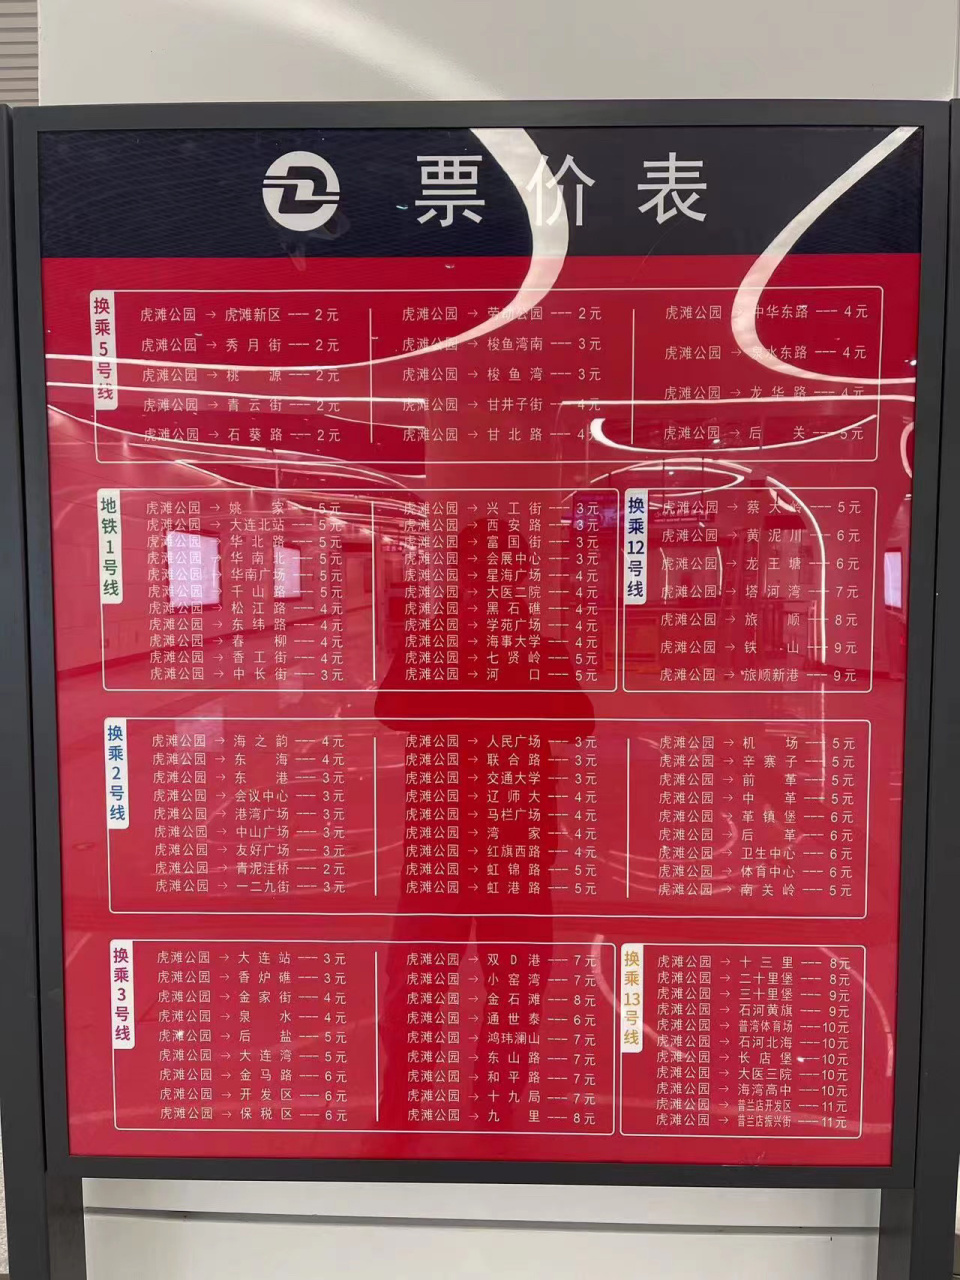 南昌地铁票价表图解图片